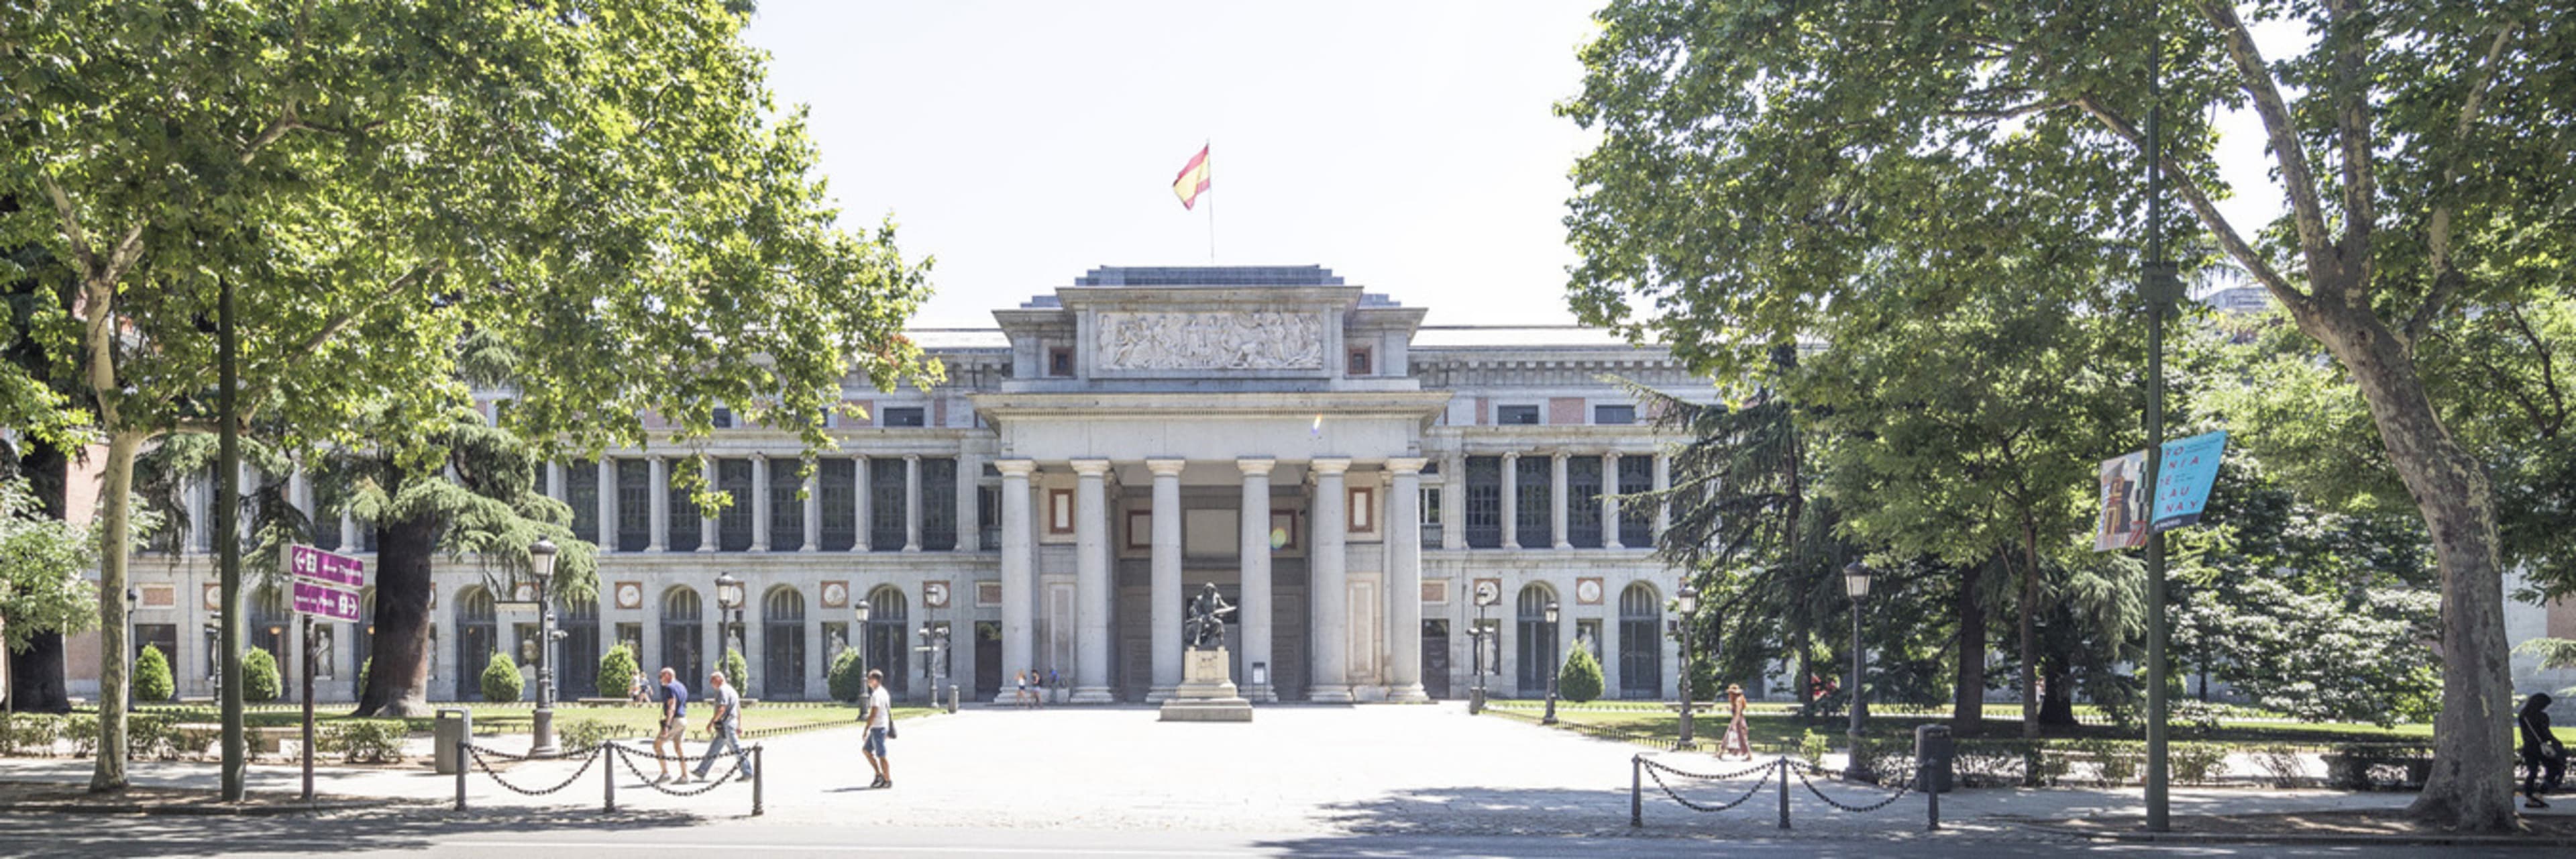 The Prado Museum in Madrid.